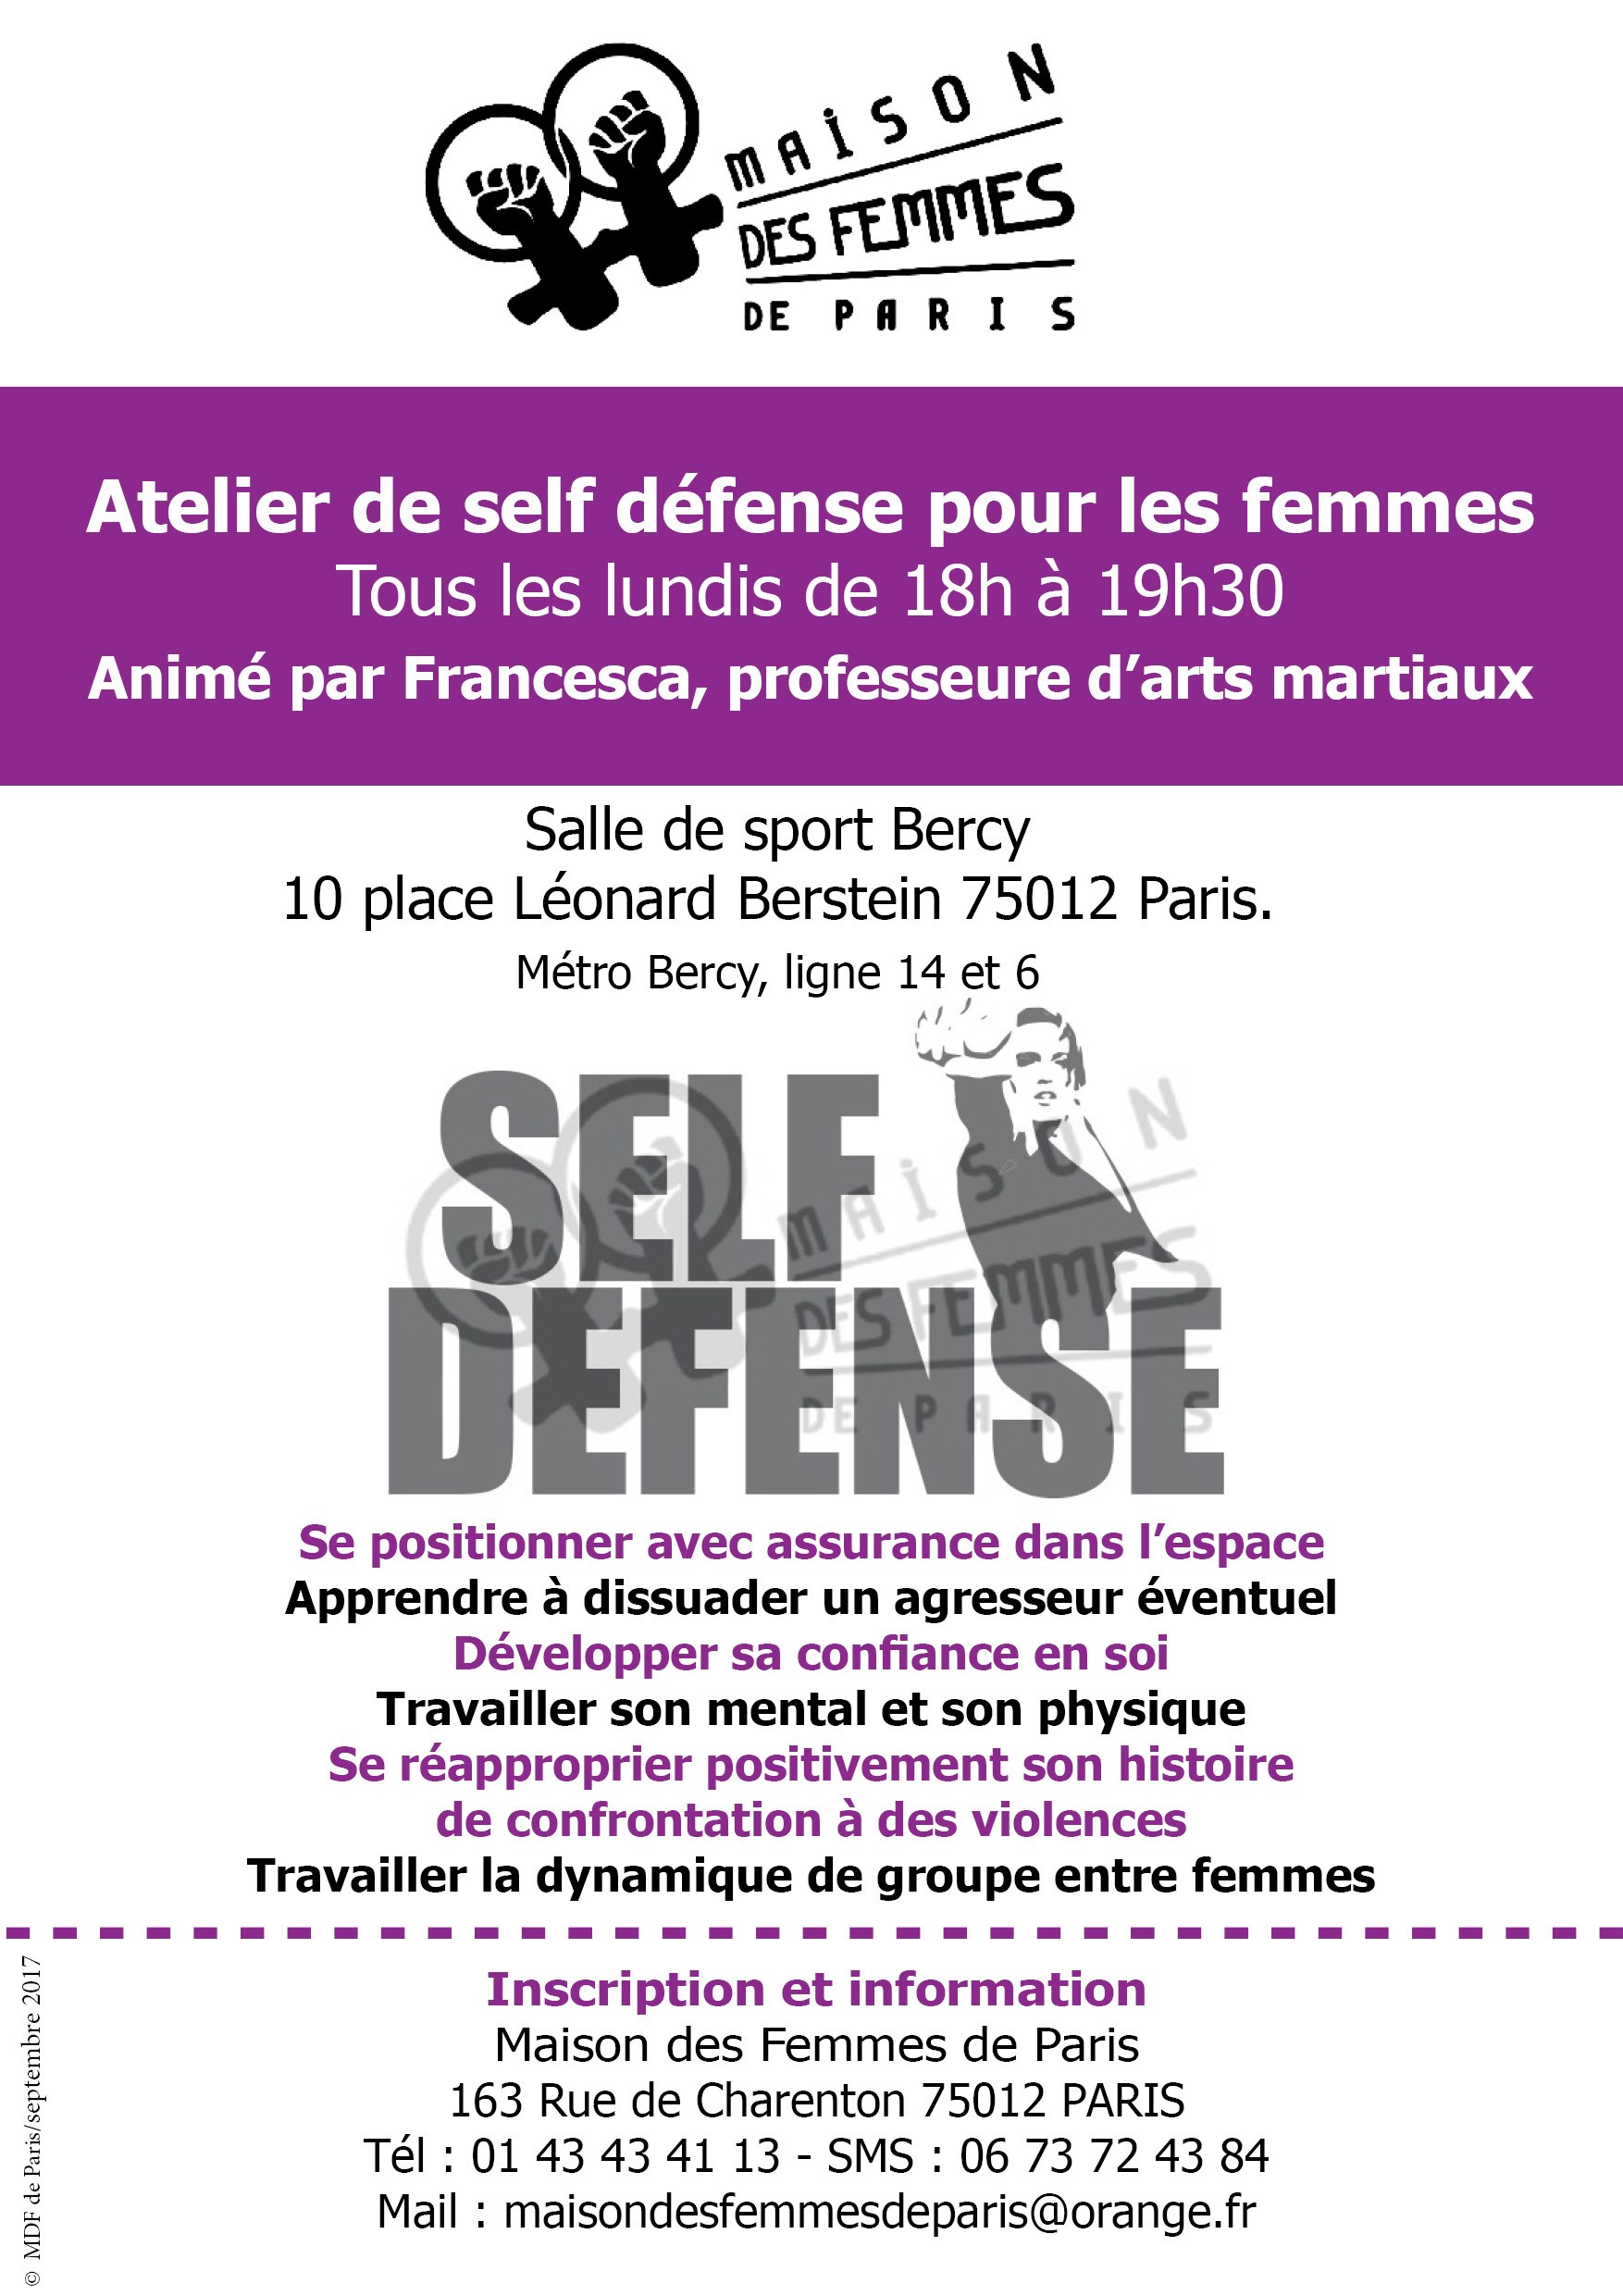 Atelier self défense Maison des Femmes de Paris 2017